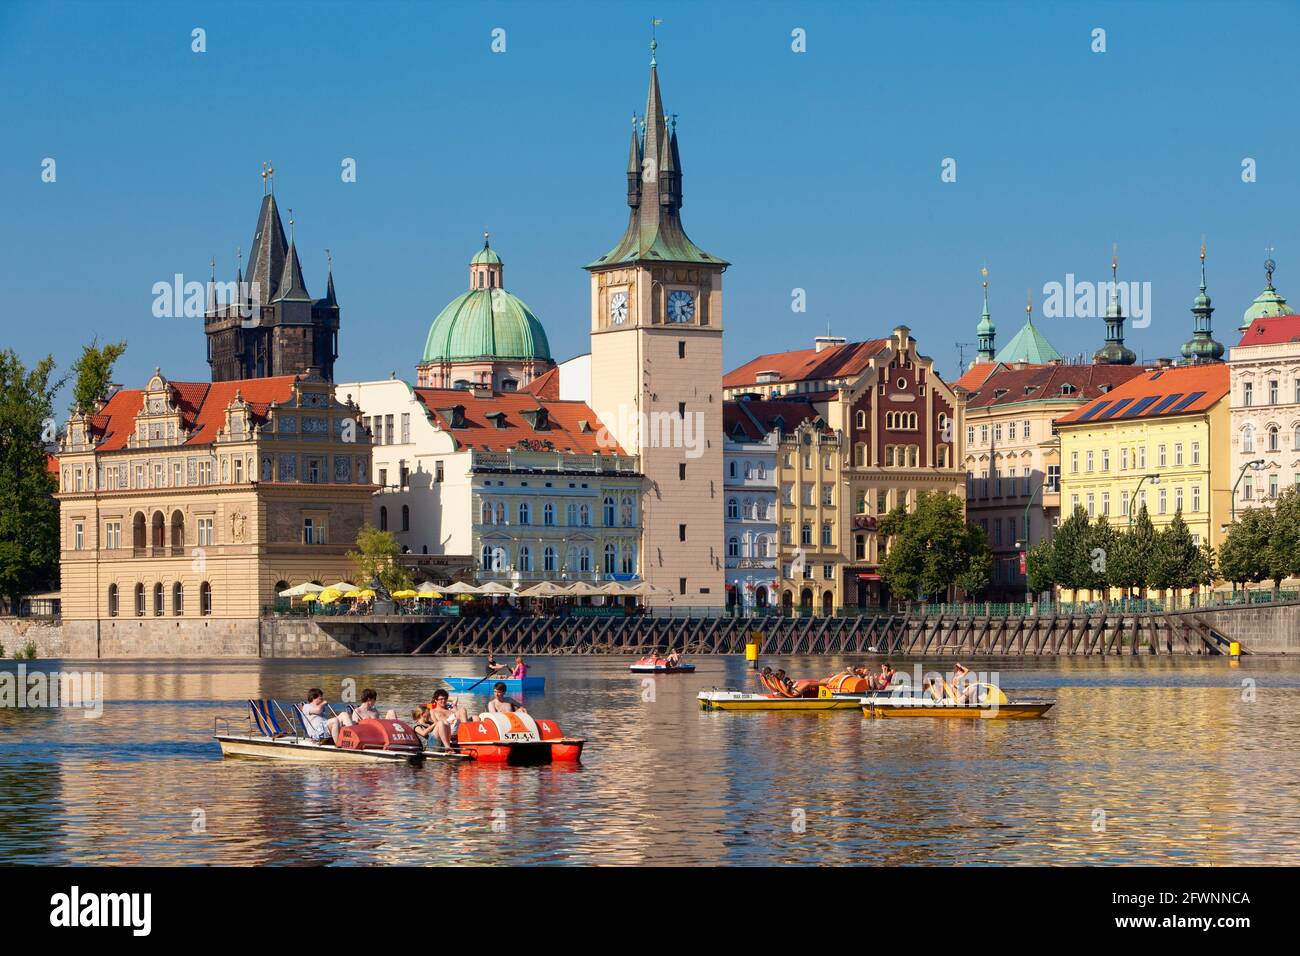 Praga - Novotneho Lakva, museo smetanovo, torres de la vieja ciudad y barcos Foto de stock